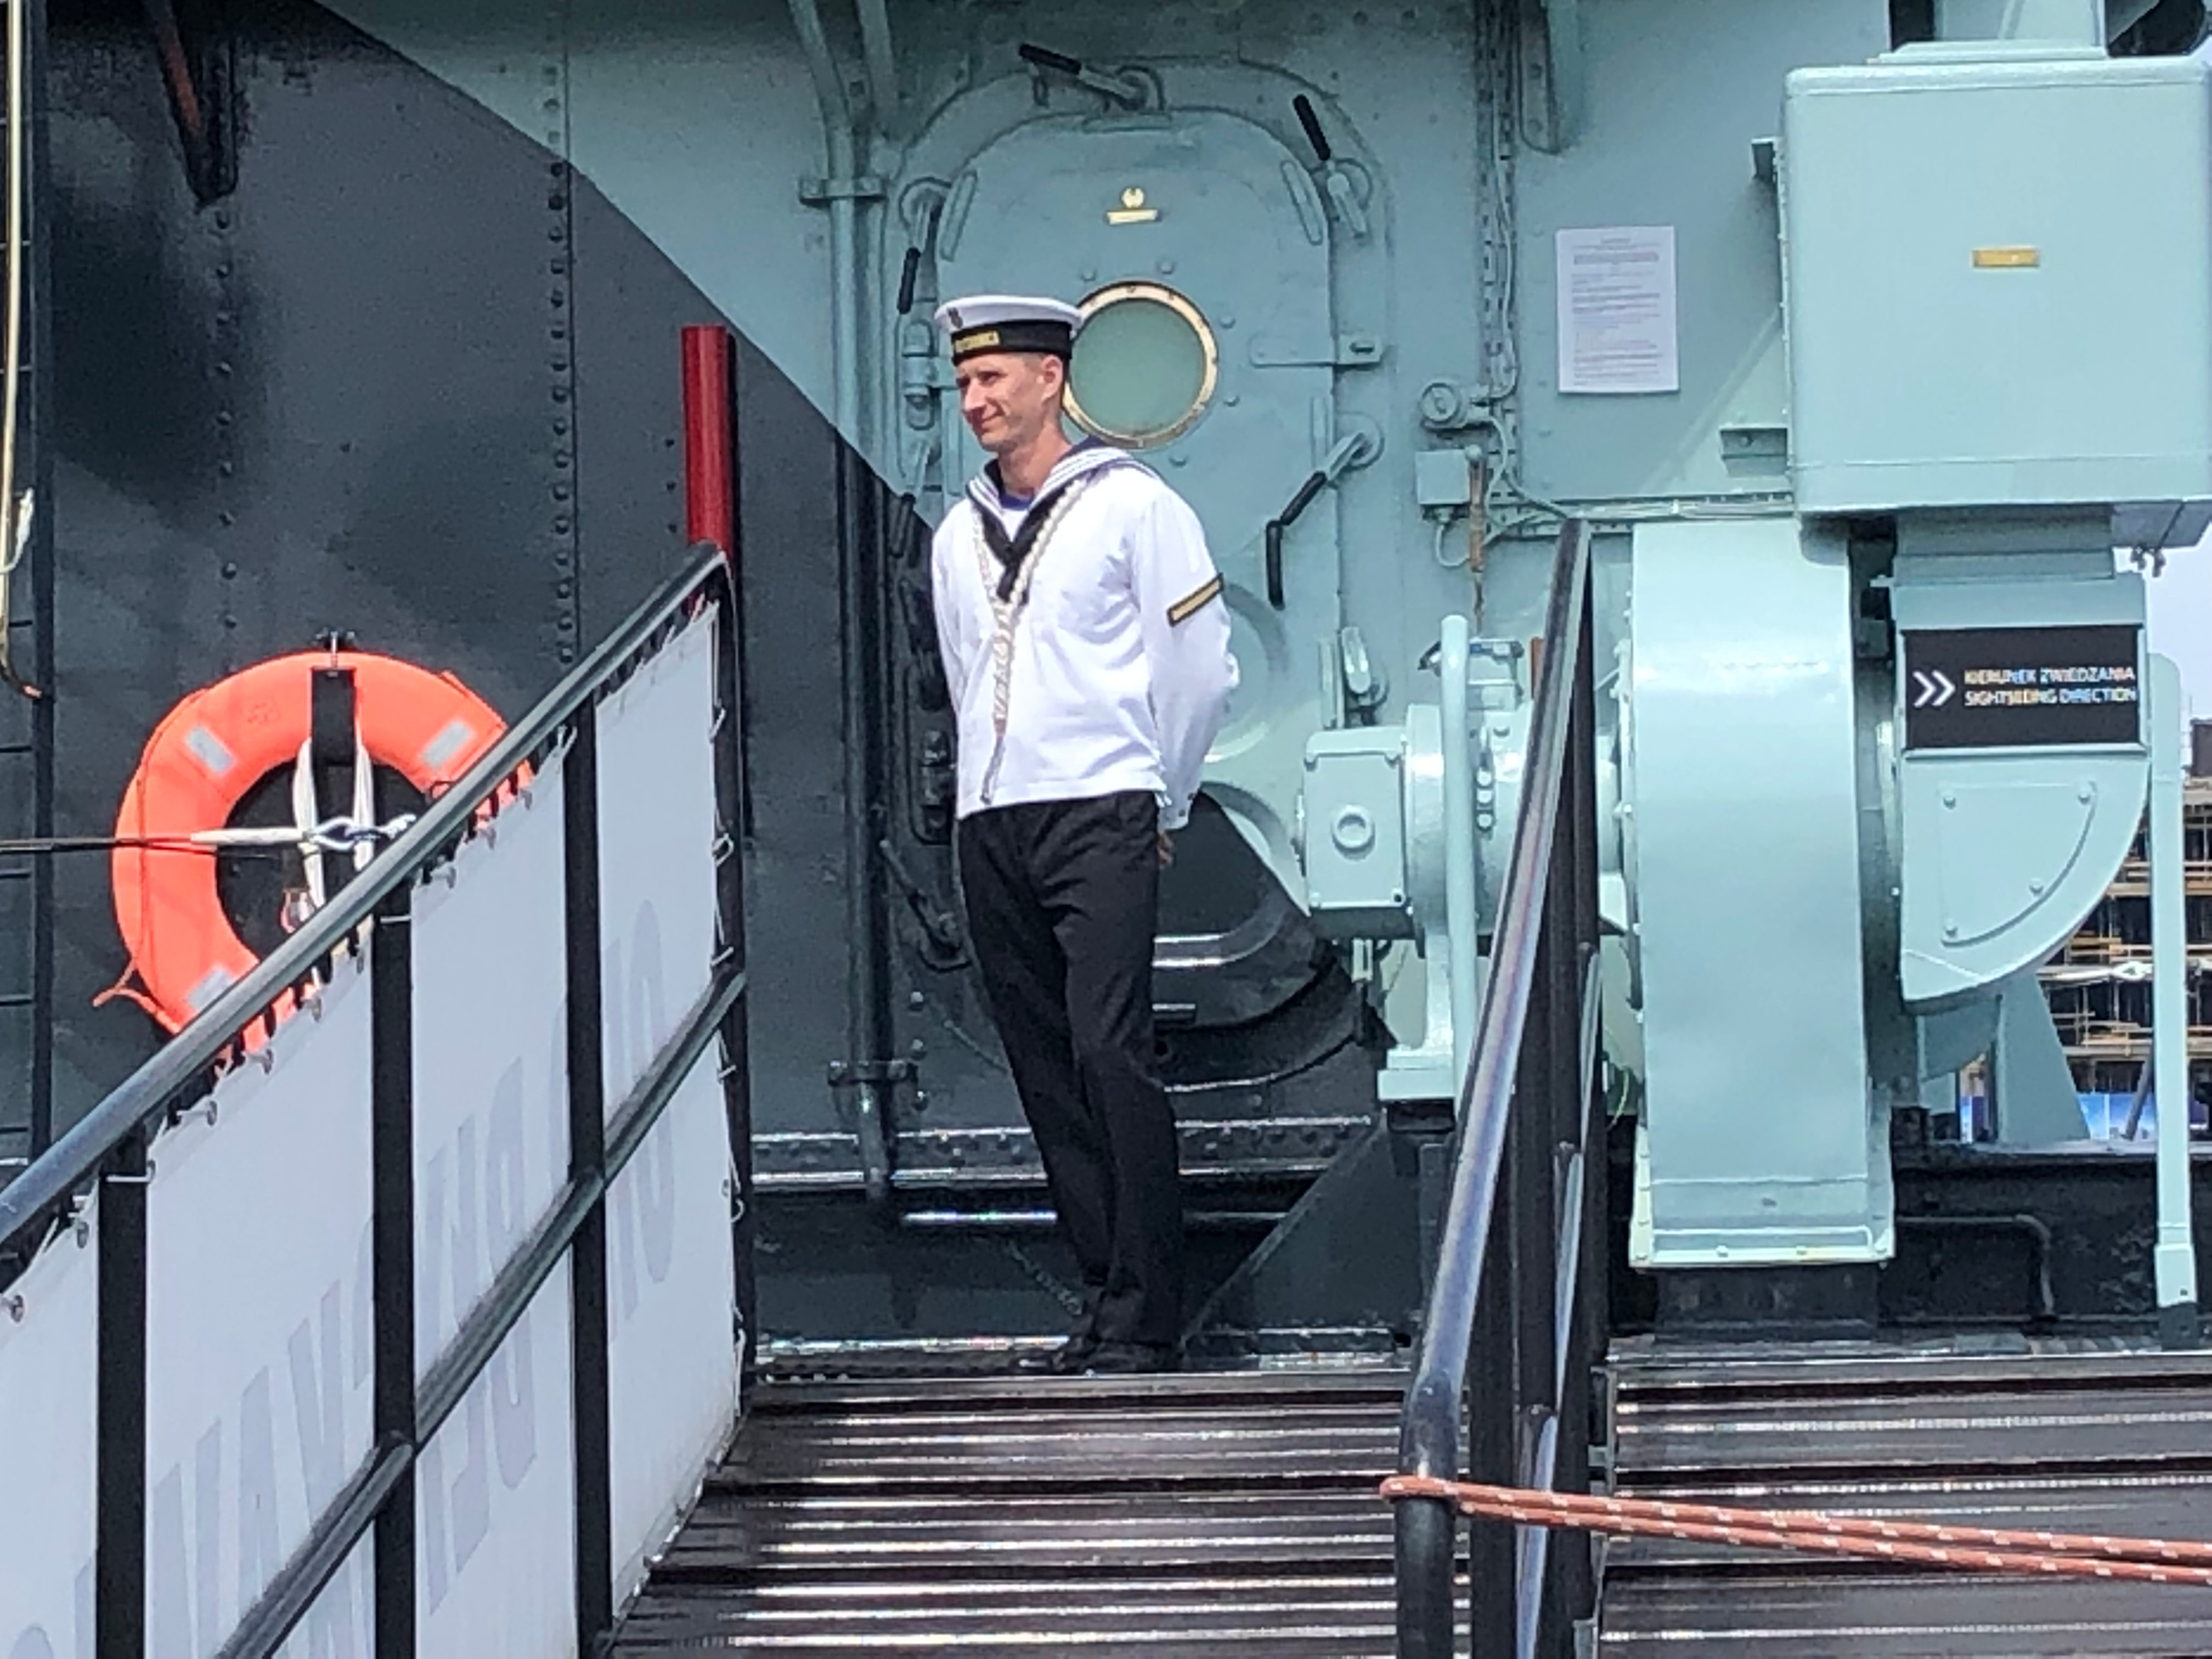 Polish sailor aboard ORP Blyskawica, Gdynia, Poland, 15 Jun 2019